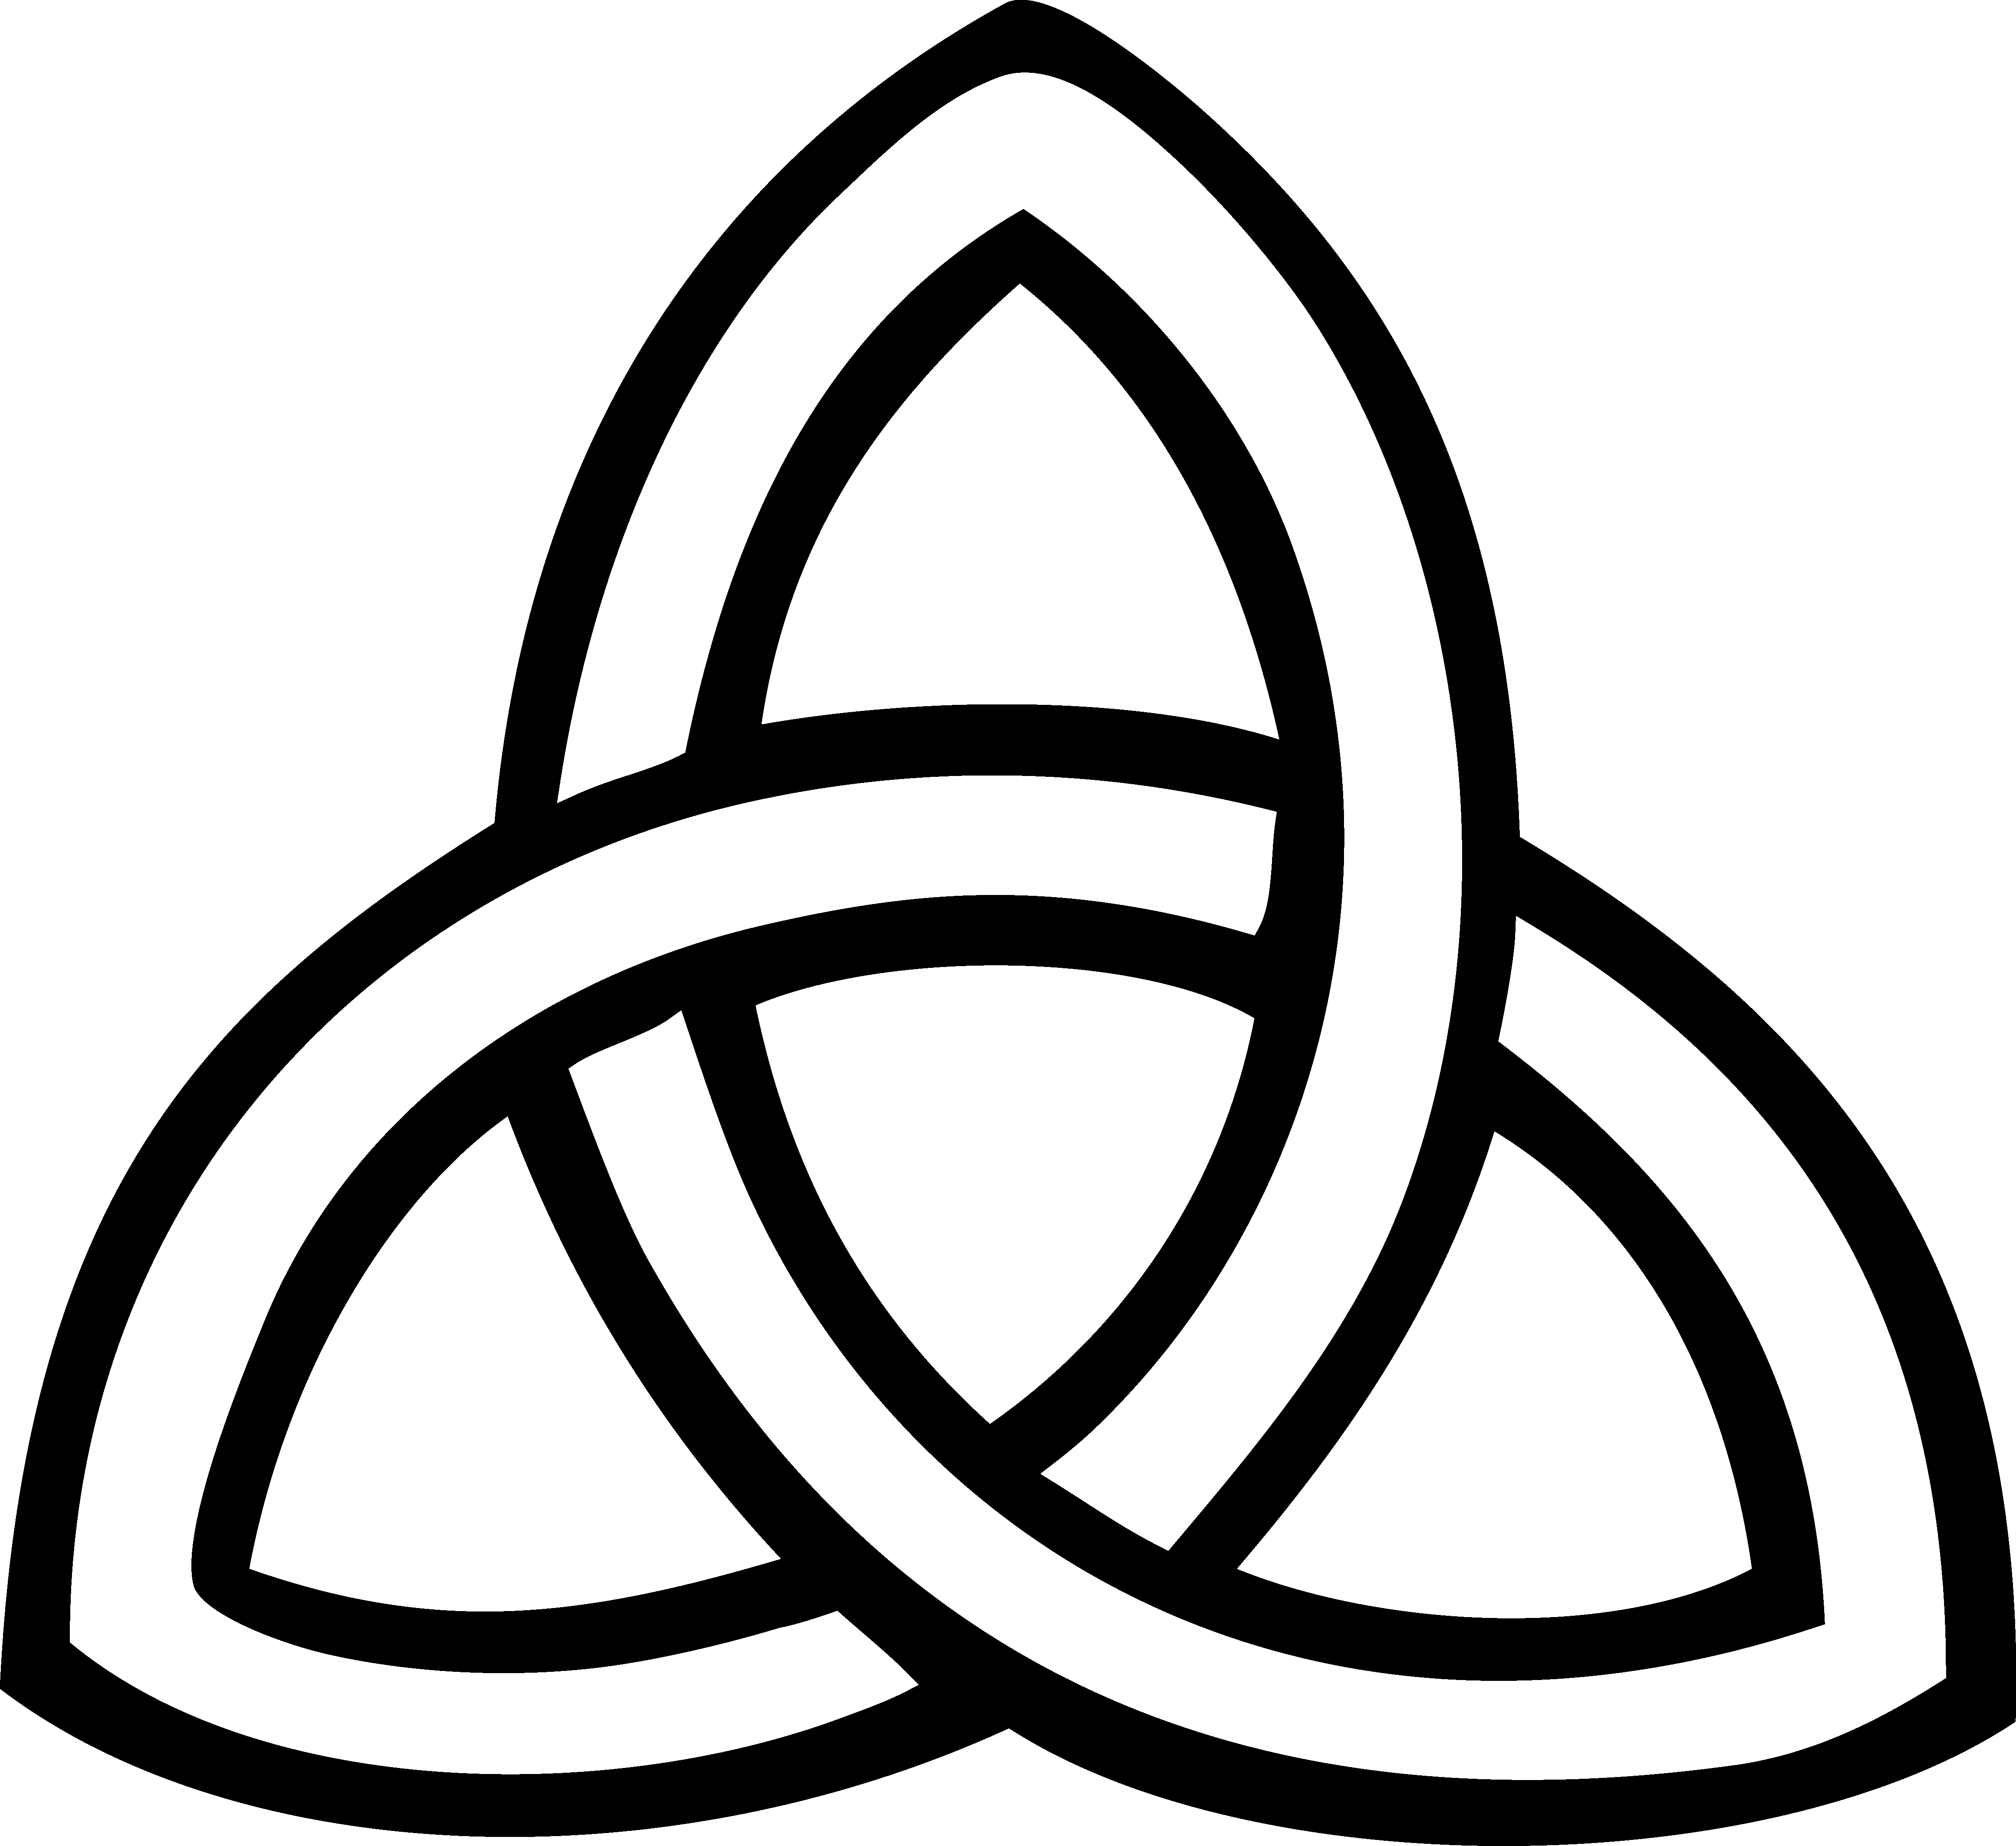 Clipart for celtic logo